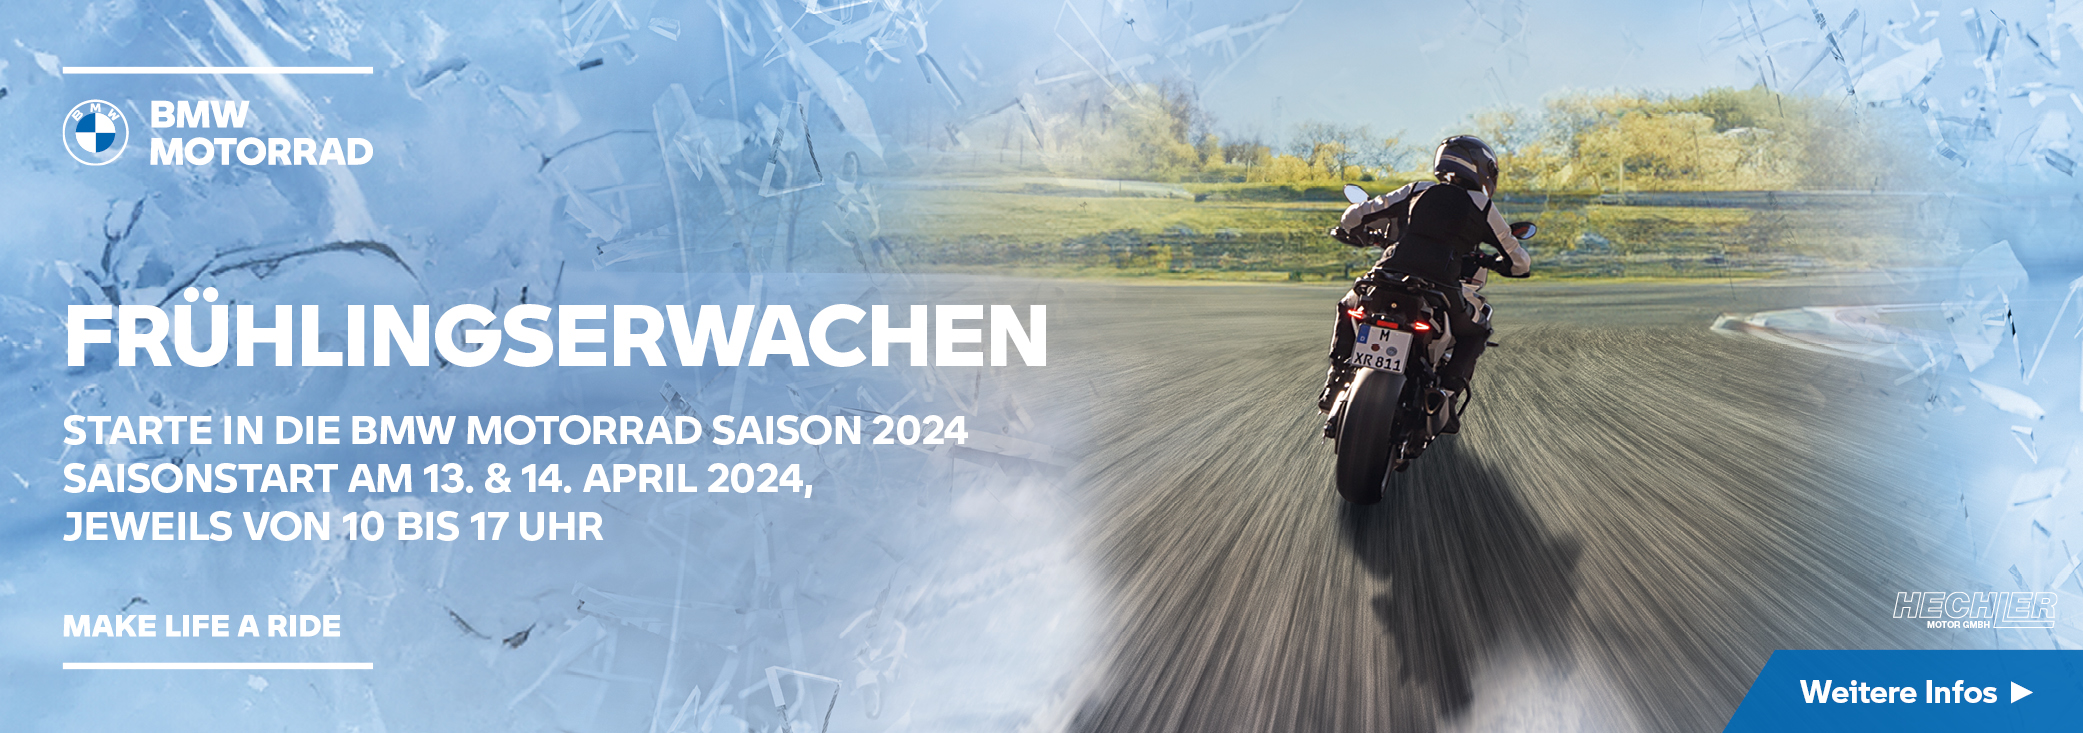 Hechler - BMW Saisonstart 2024